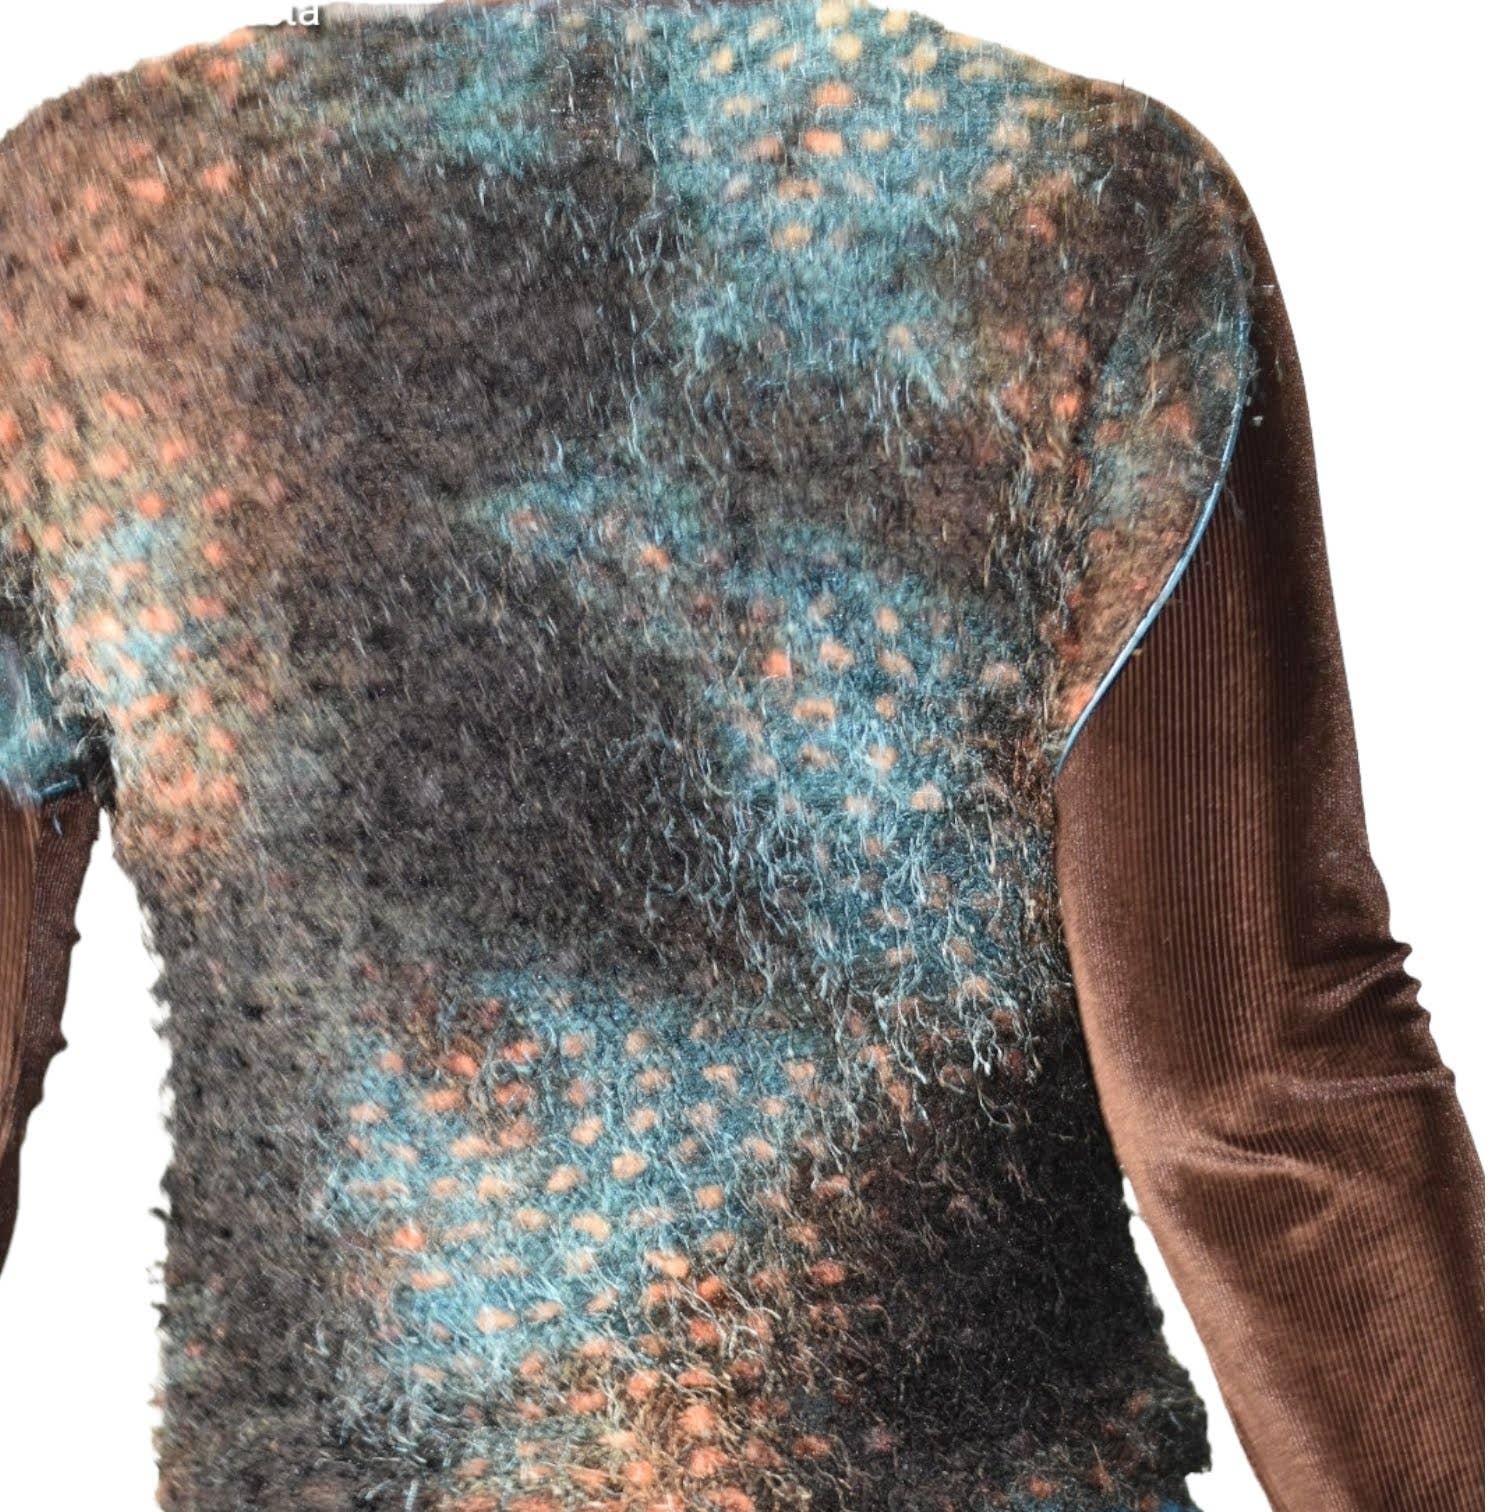 Anac Eyelash Mixed Media Sweater Top 90s Textured Brown Grunge Corduroy Size Medium